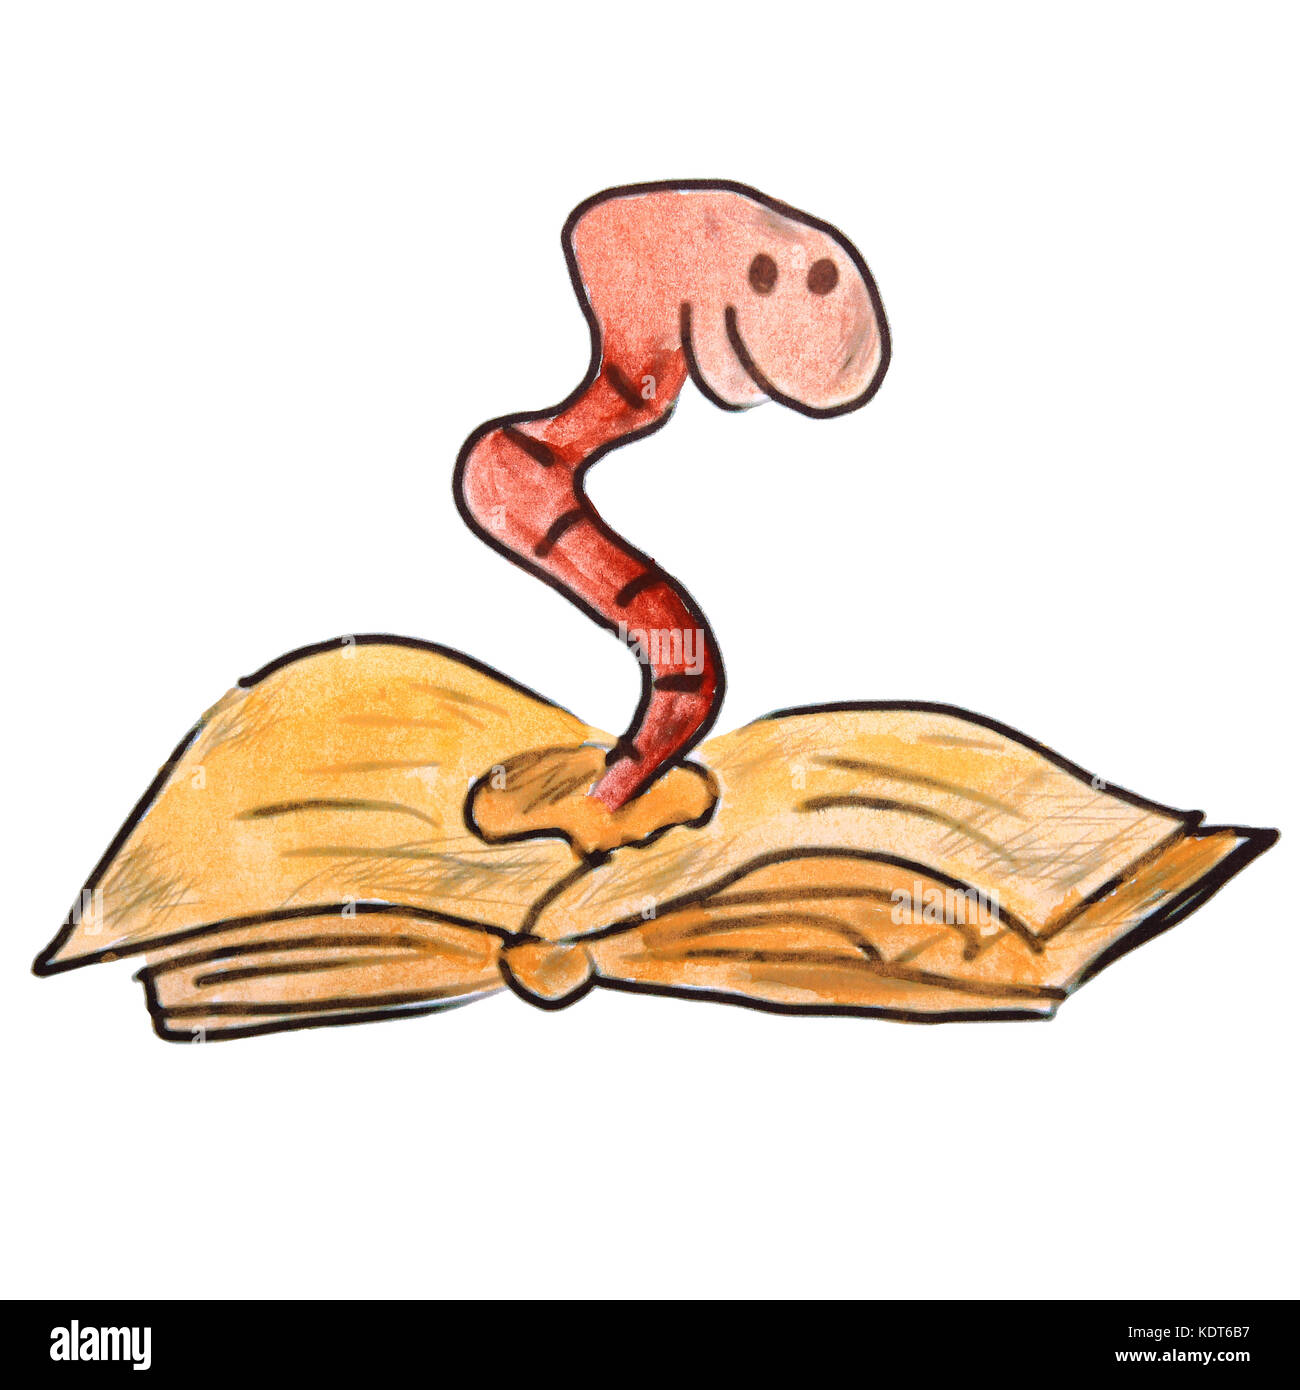 Los niños dibujo acuarela worm en un libro de historietas backgro blanco Foto de stock